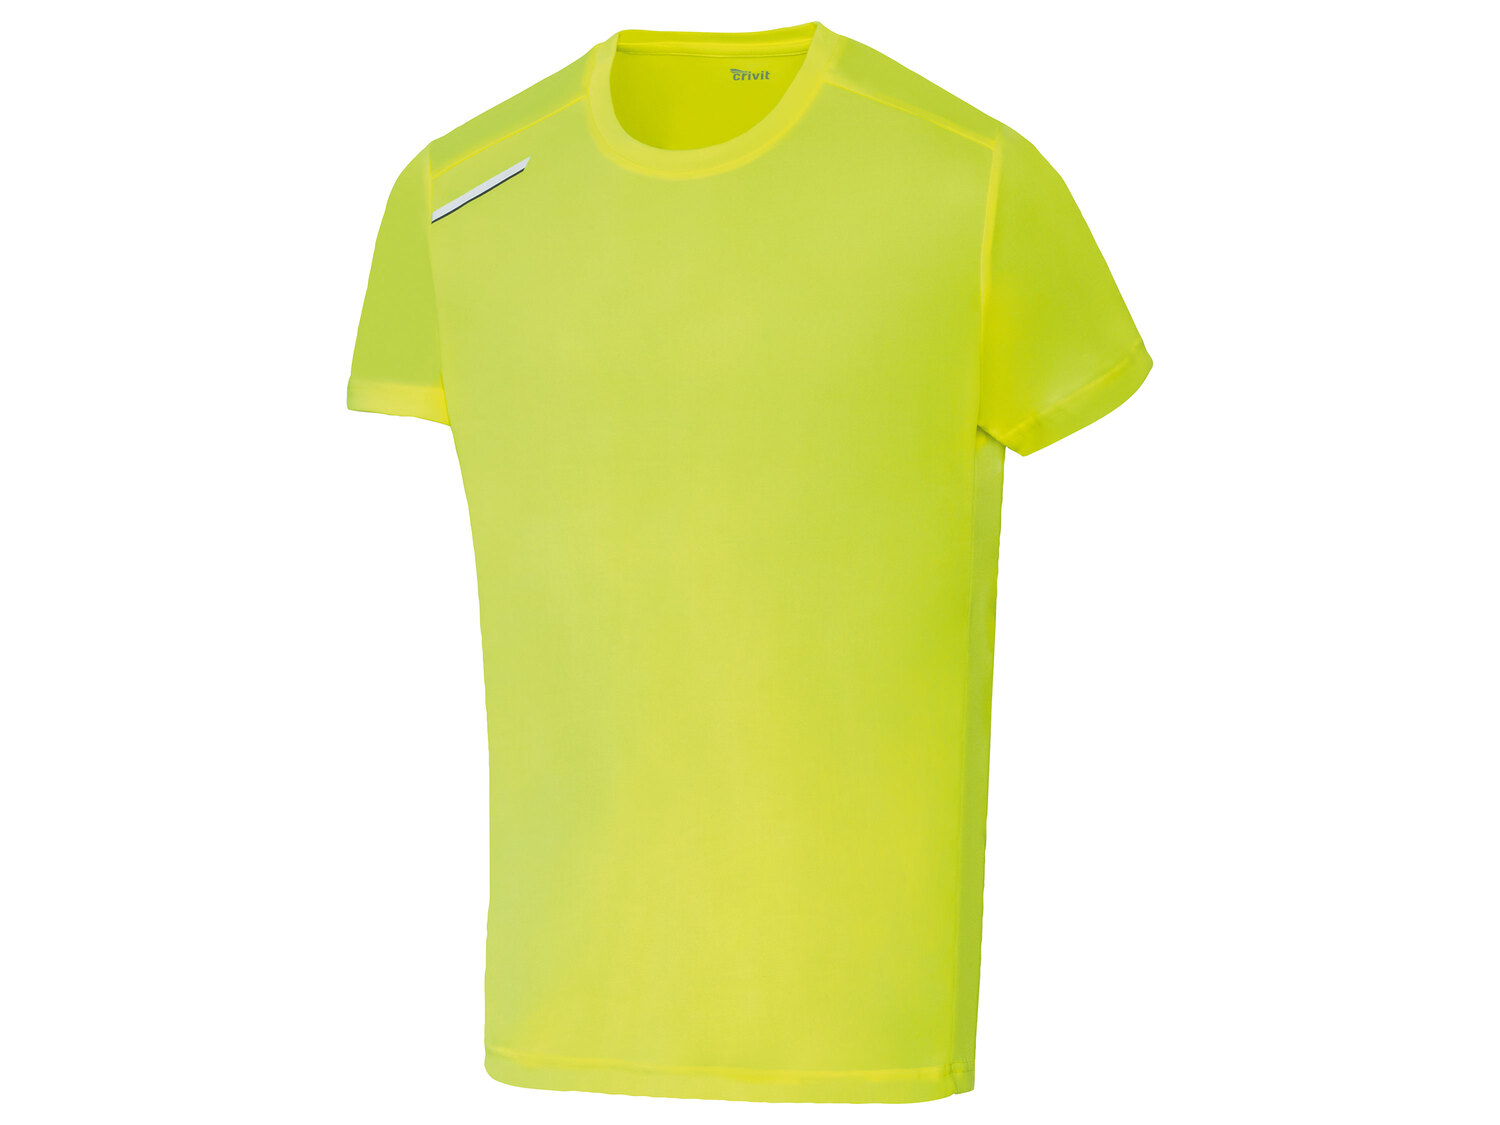 T-shirt technique , le prix 4.99 € 
- Du S au XL selon modèle
- Ex. 100 % polyester
- ...